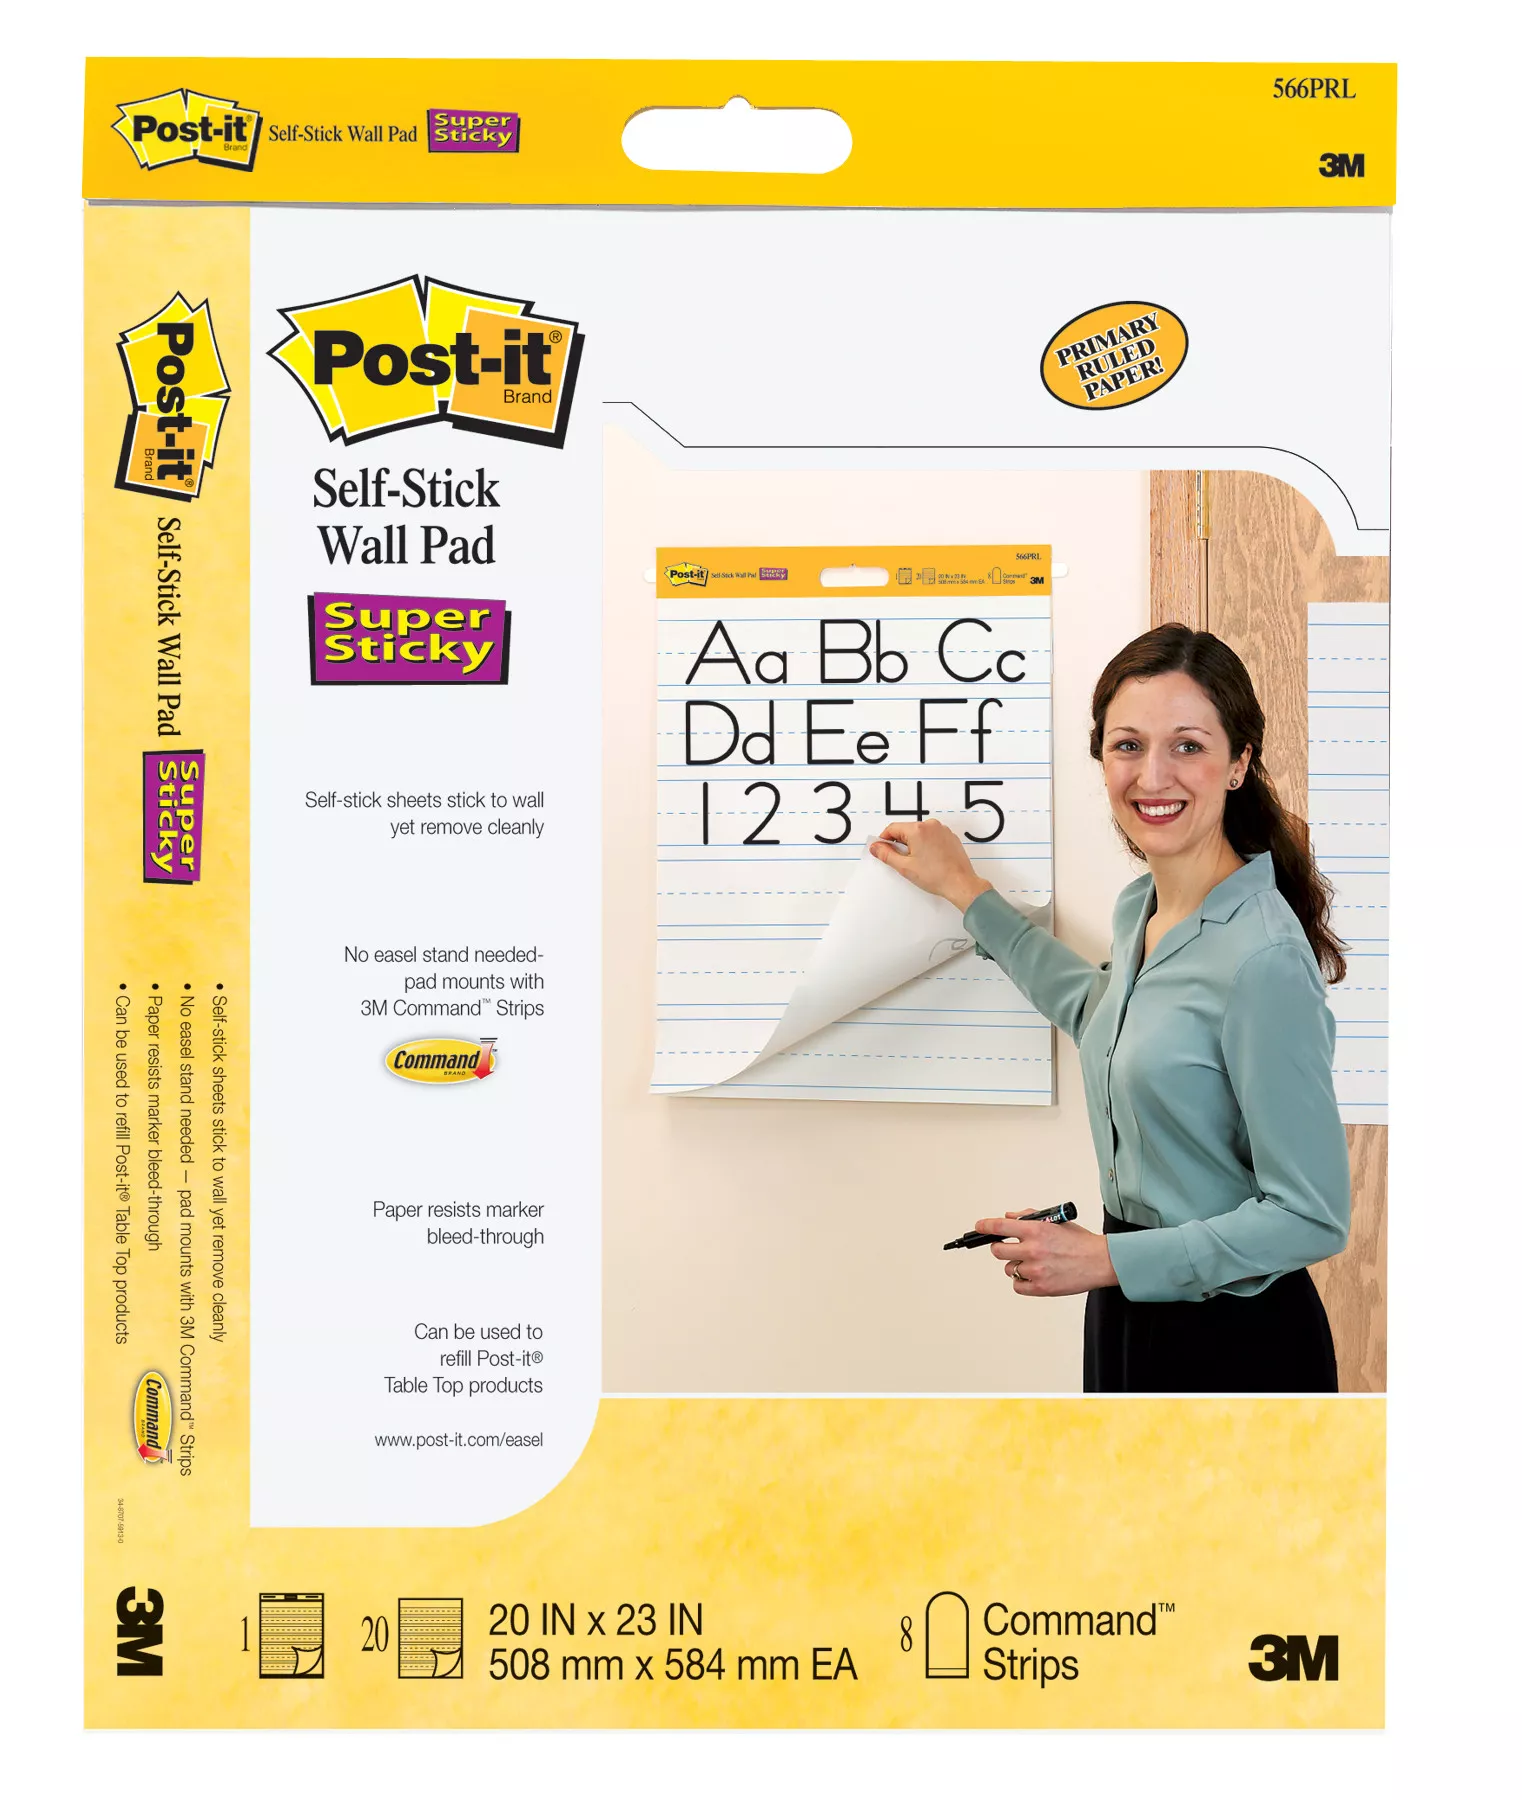 UPC 00051141340876 | Post-it® Self-Stick Wall Pad 566PRL